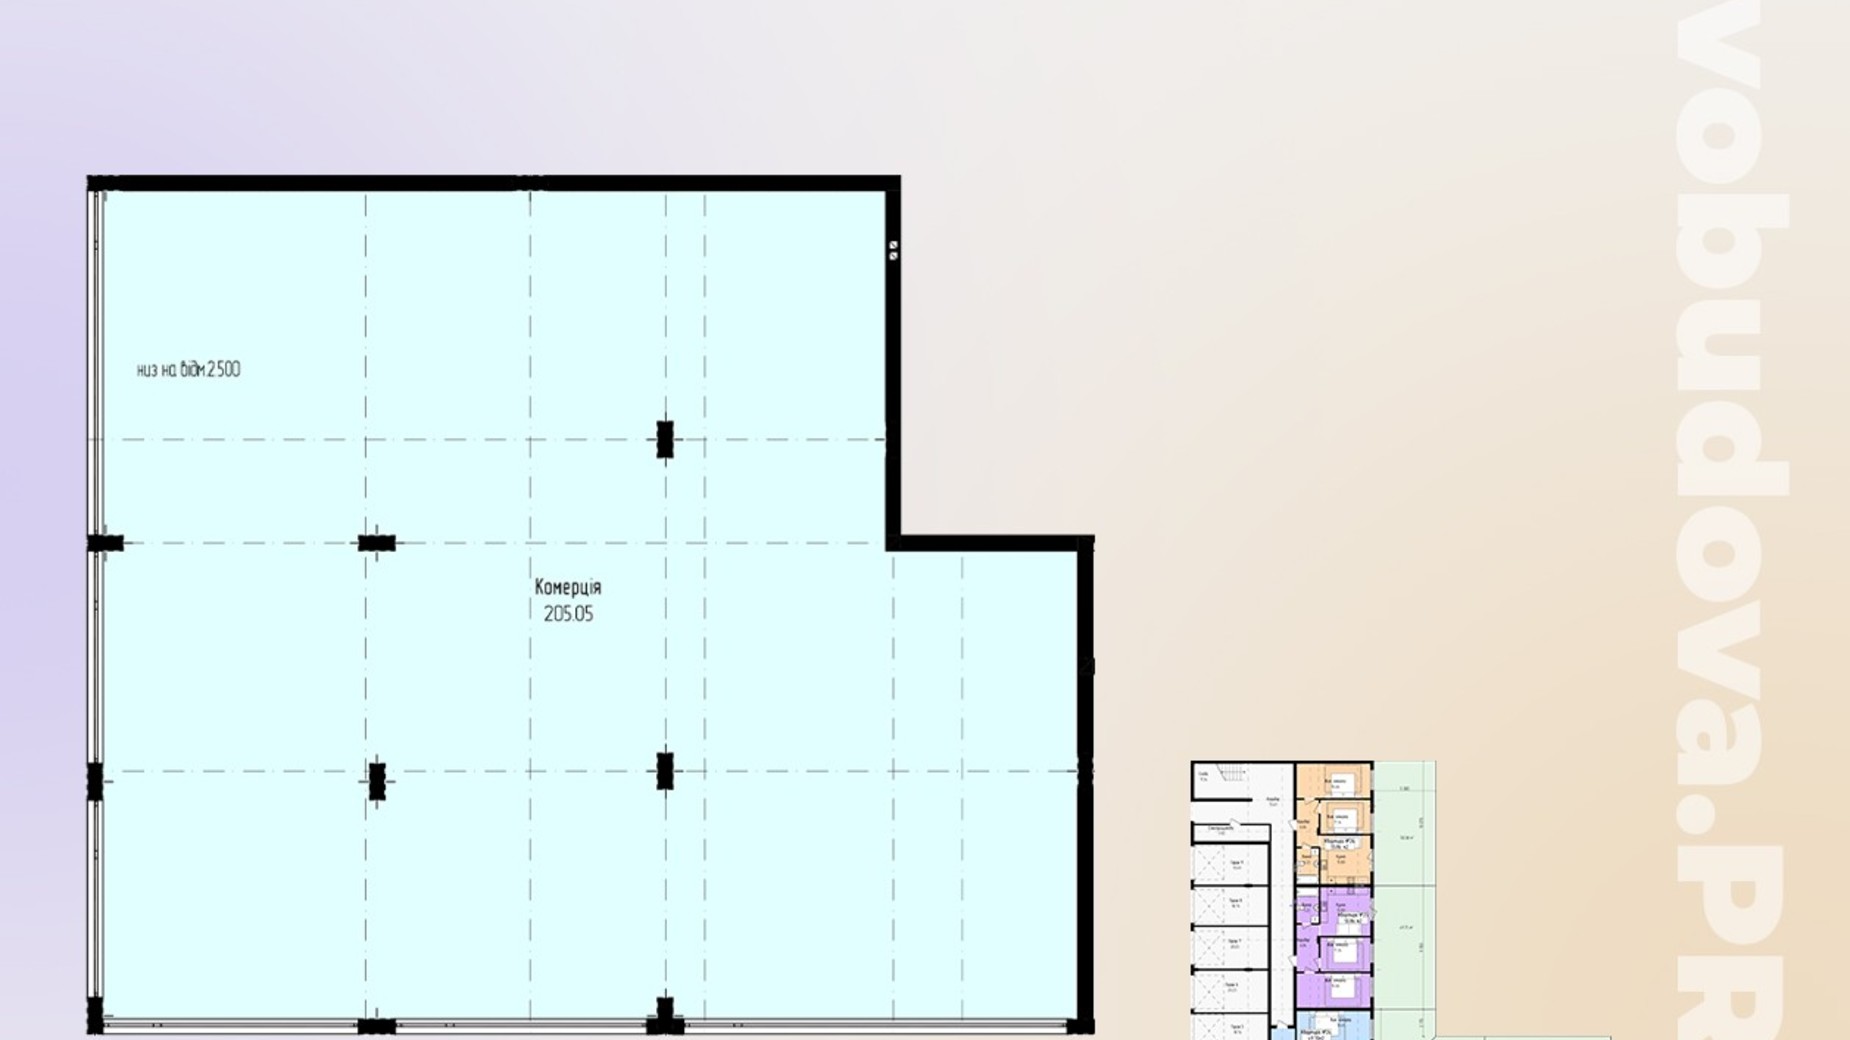 Планировка 1-комнатной квартиры в ЖК Зелёный 205.05 м², фото 647688